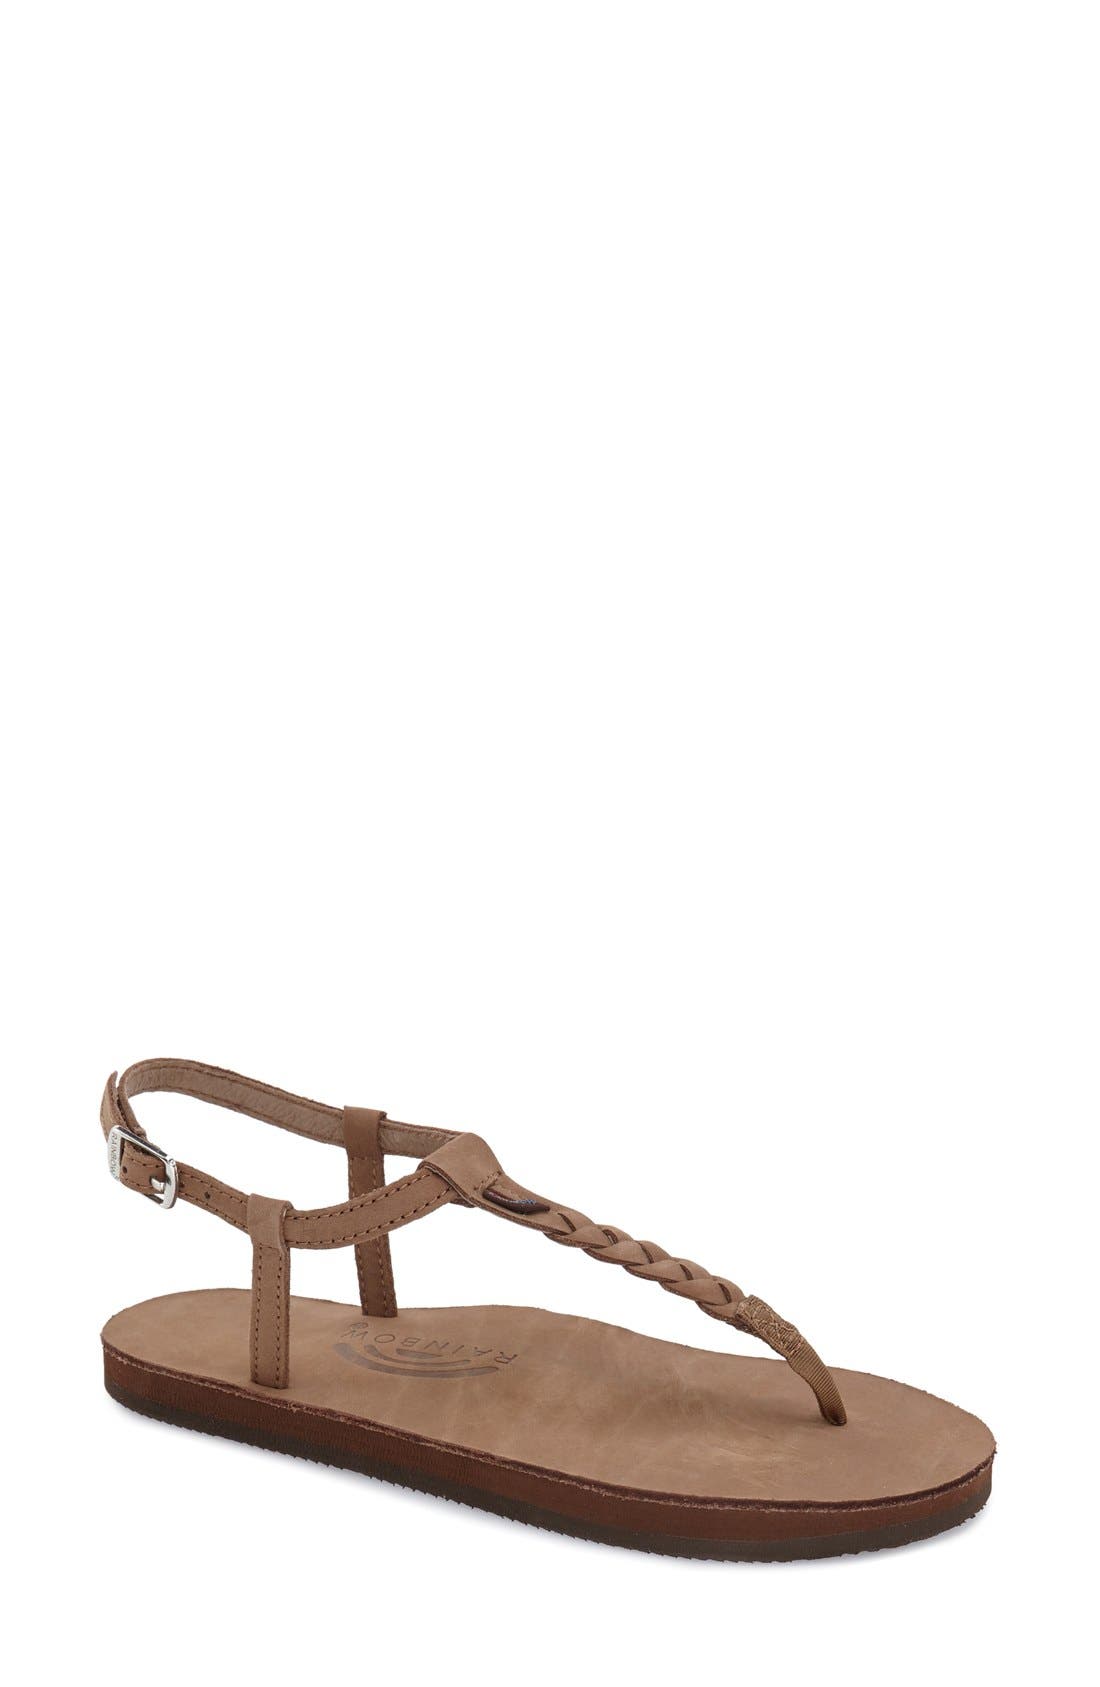 sand tory burch miller sandals